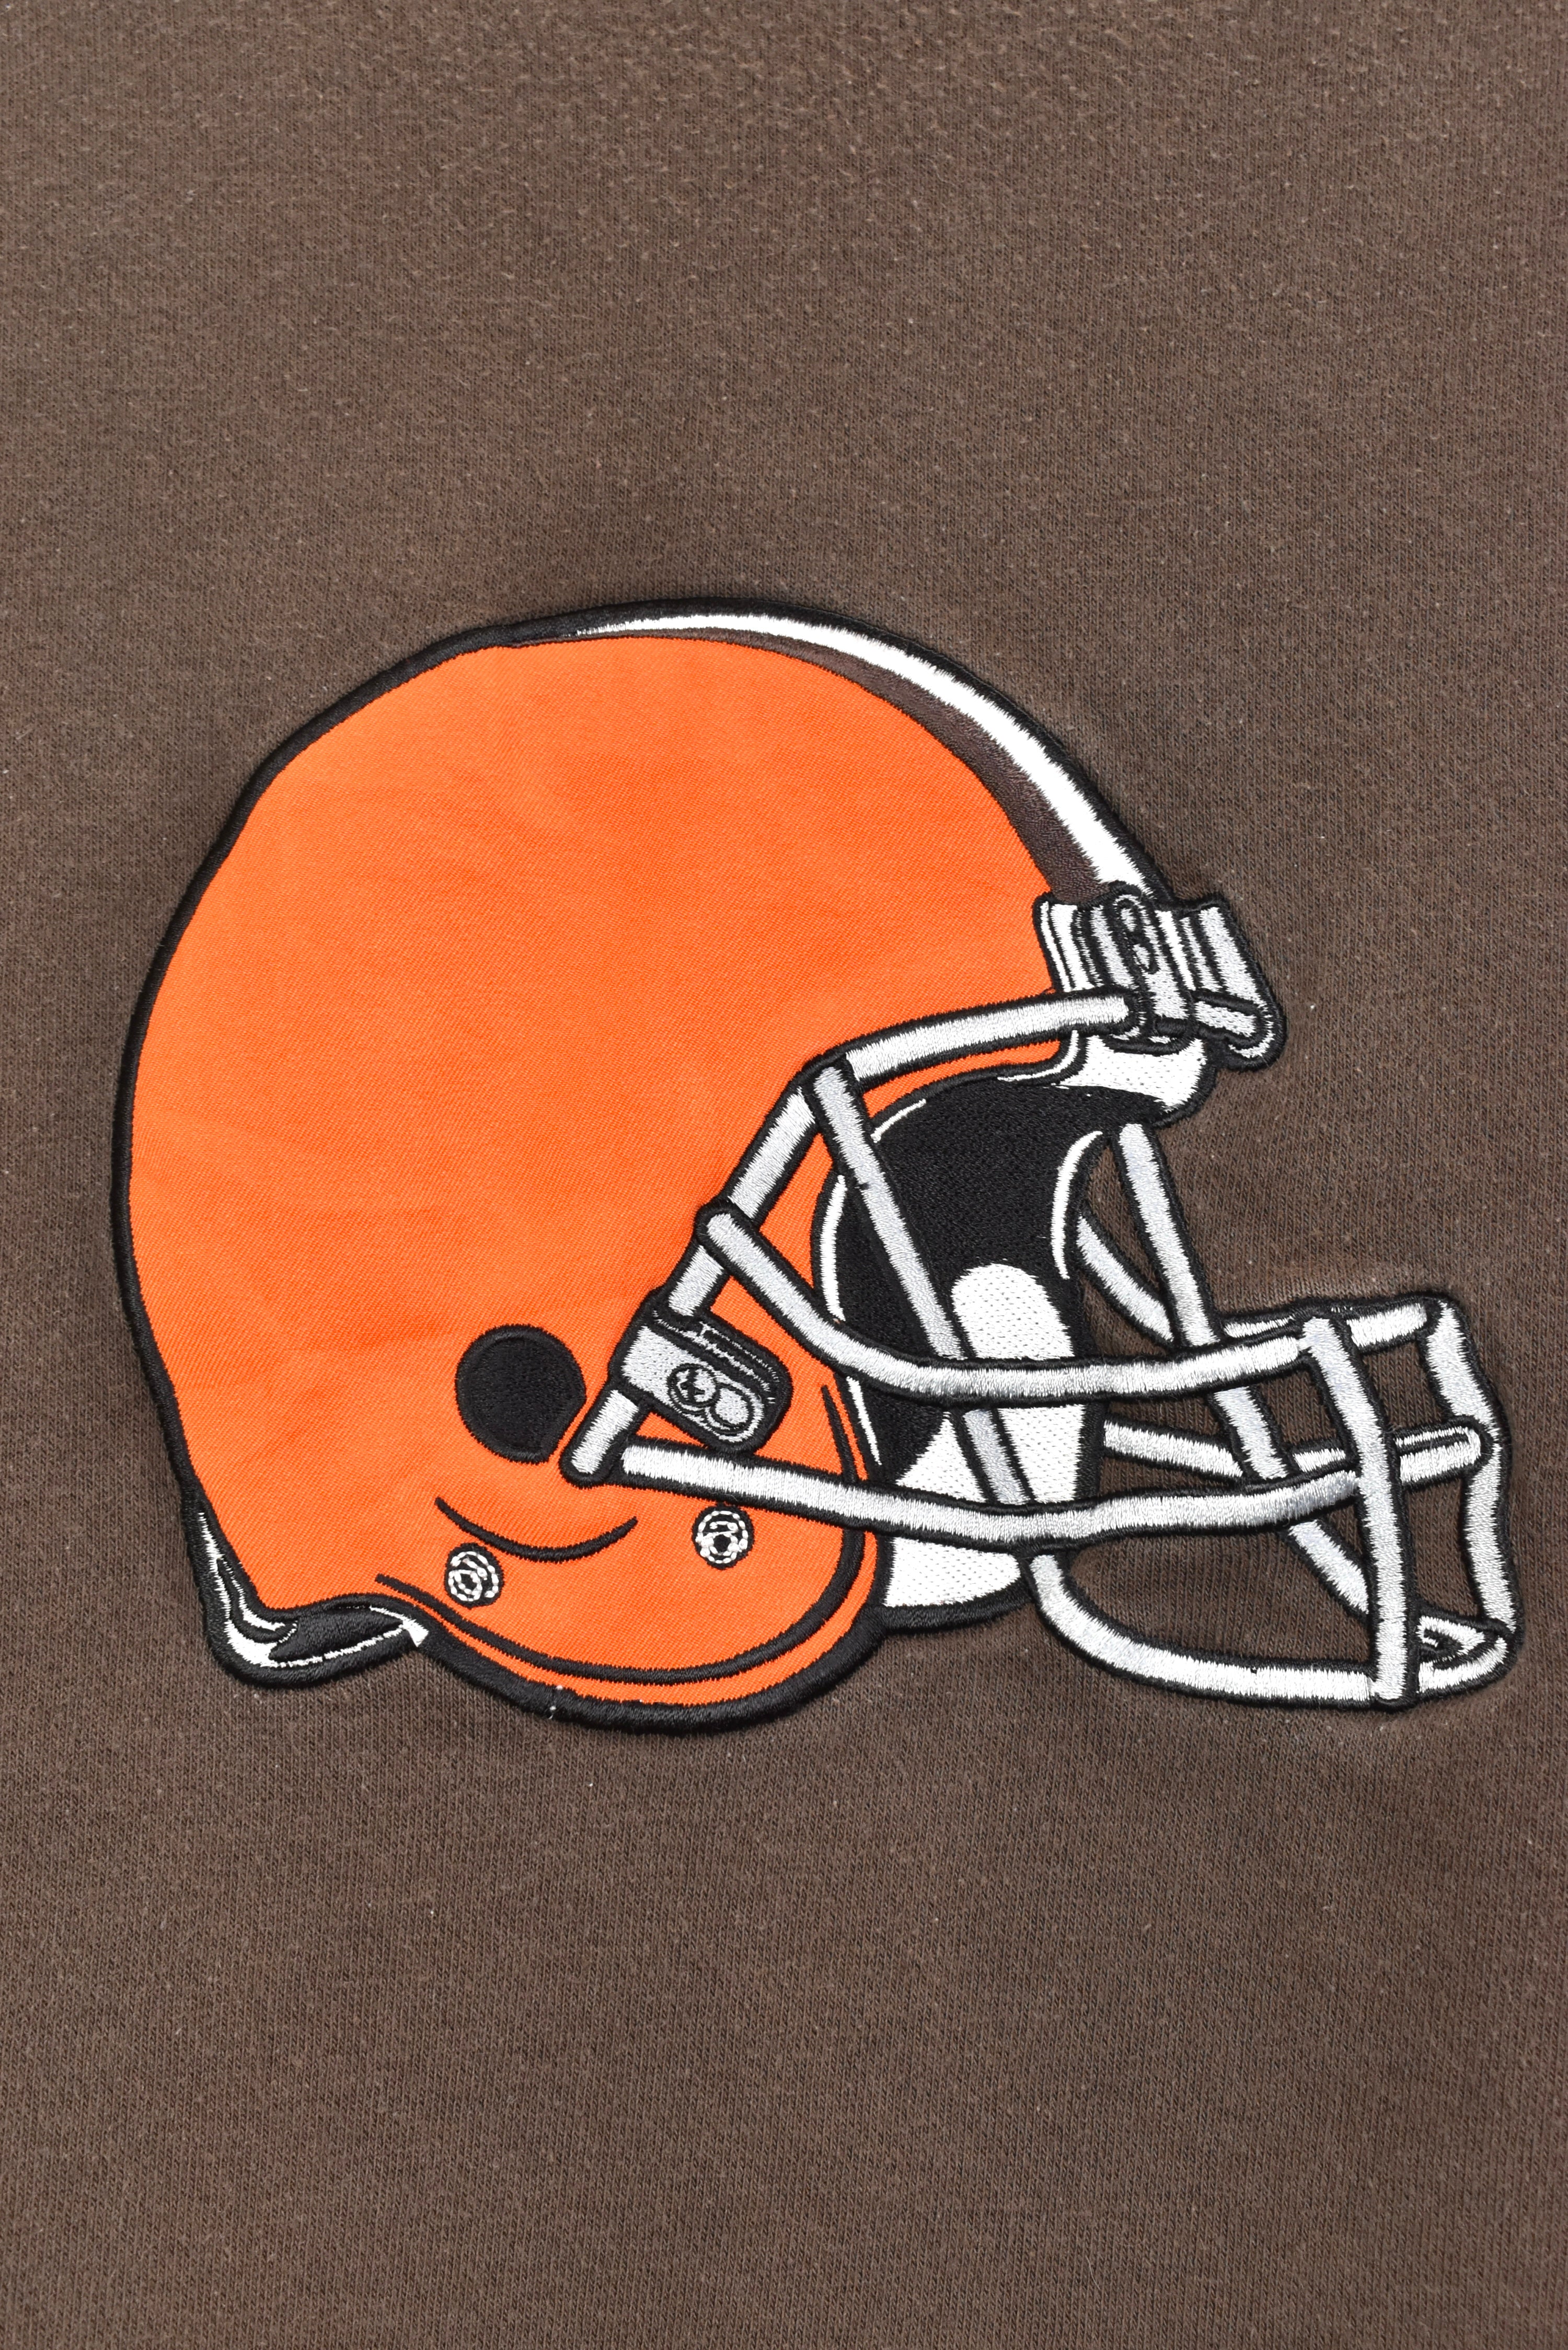 Vintage NFL Cleveland Browns embroidered brown sweatshirt | XXL PRO SPORT